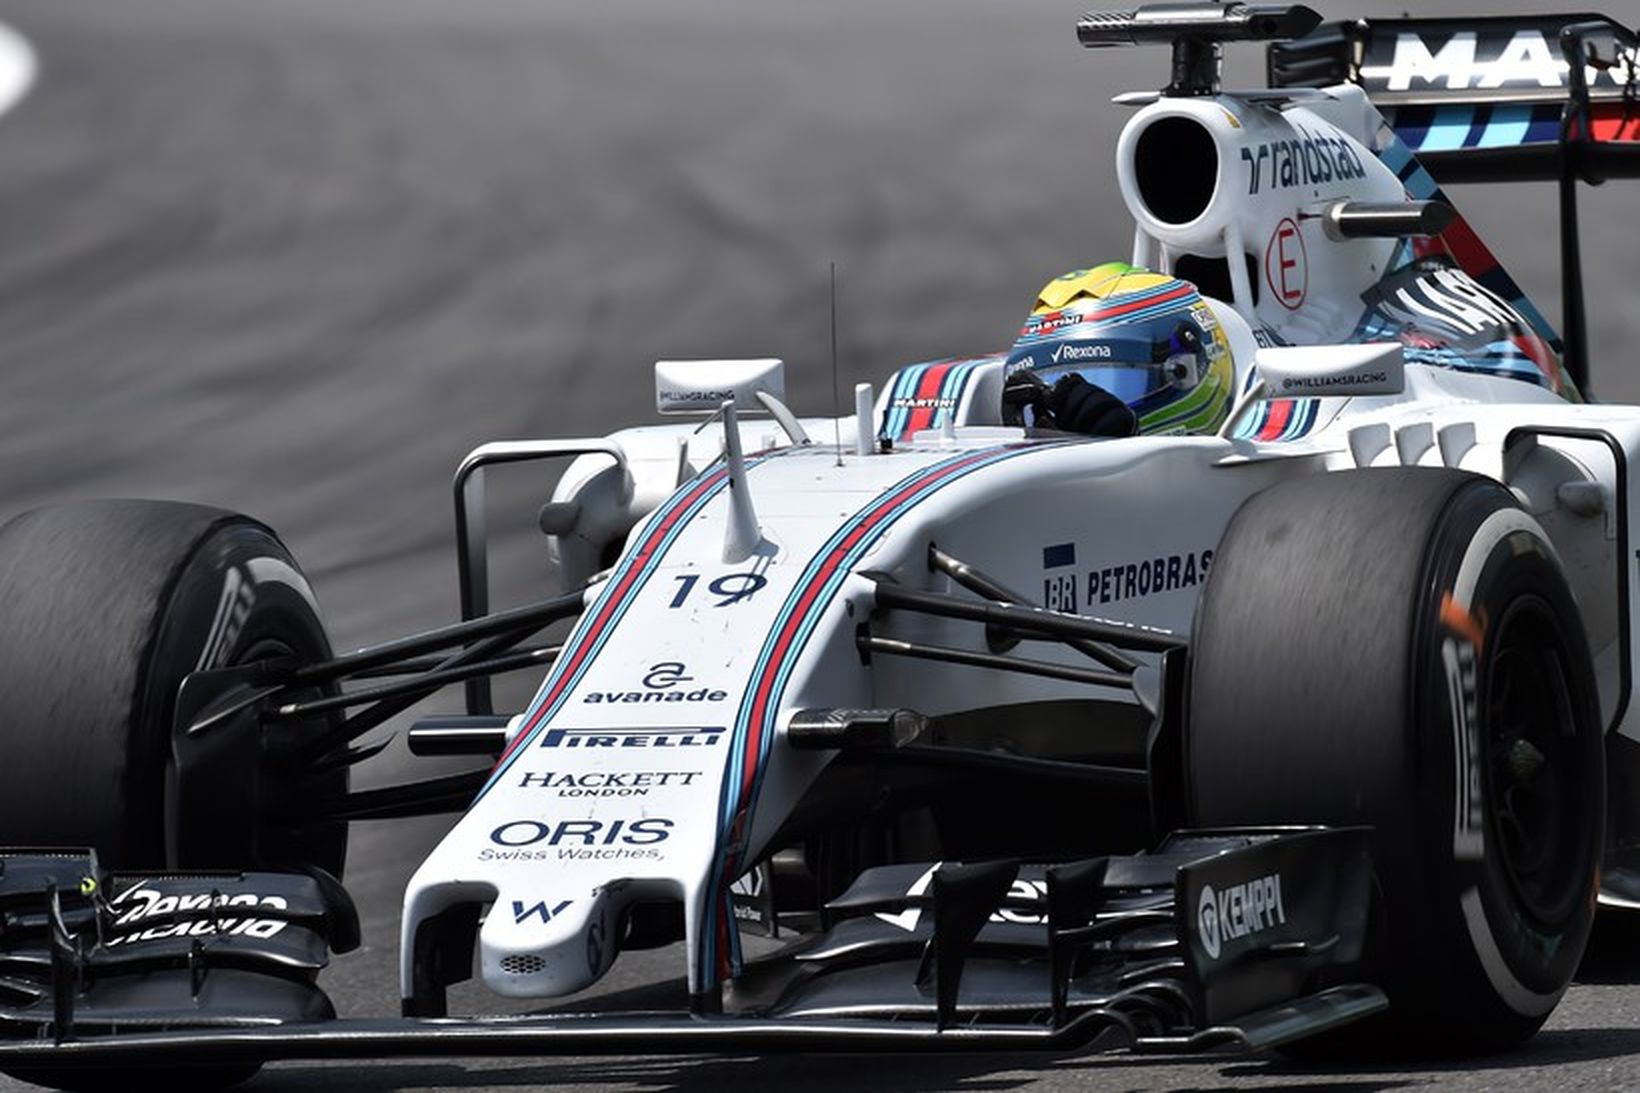 Annað afturdekkið var of heitt undir Williamsbíl Felipe Massa.